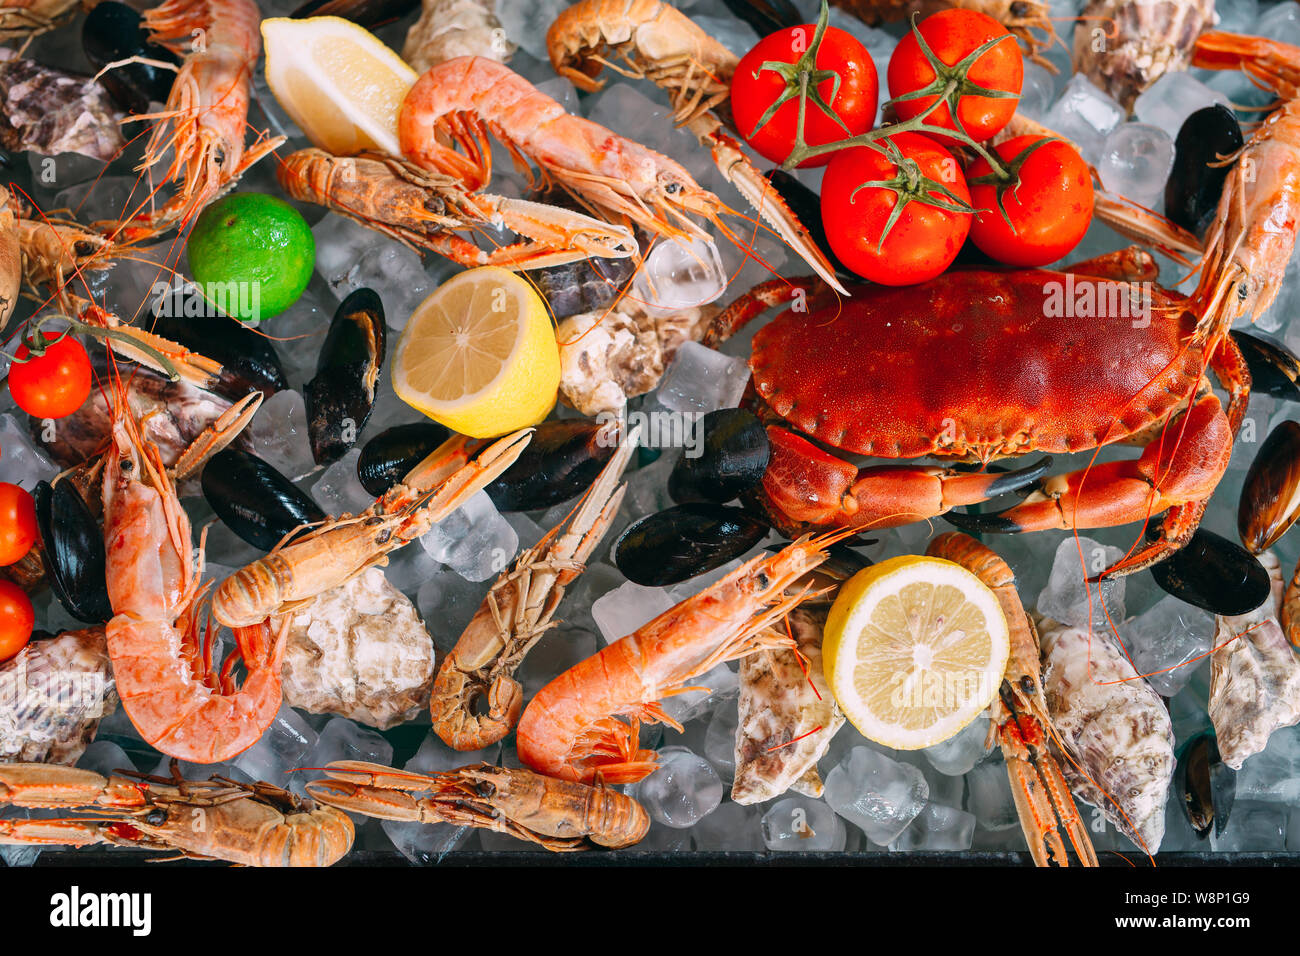 Meeresfrüchte auf Eis. Krabben, Stör, Muscheln, Garnelen, Rapana, Dorado, auf weissem Eis. Stockfoto